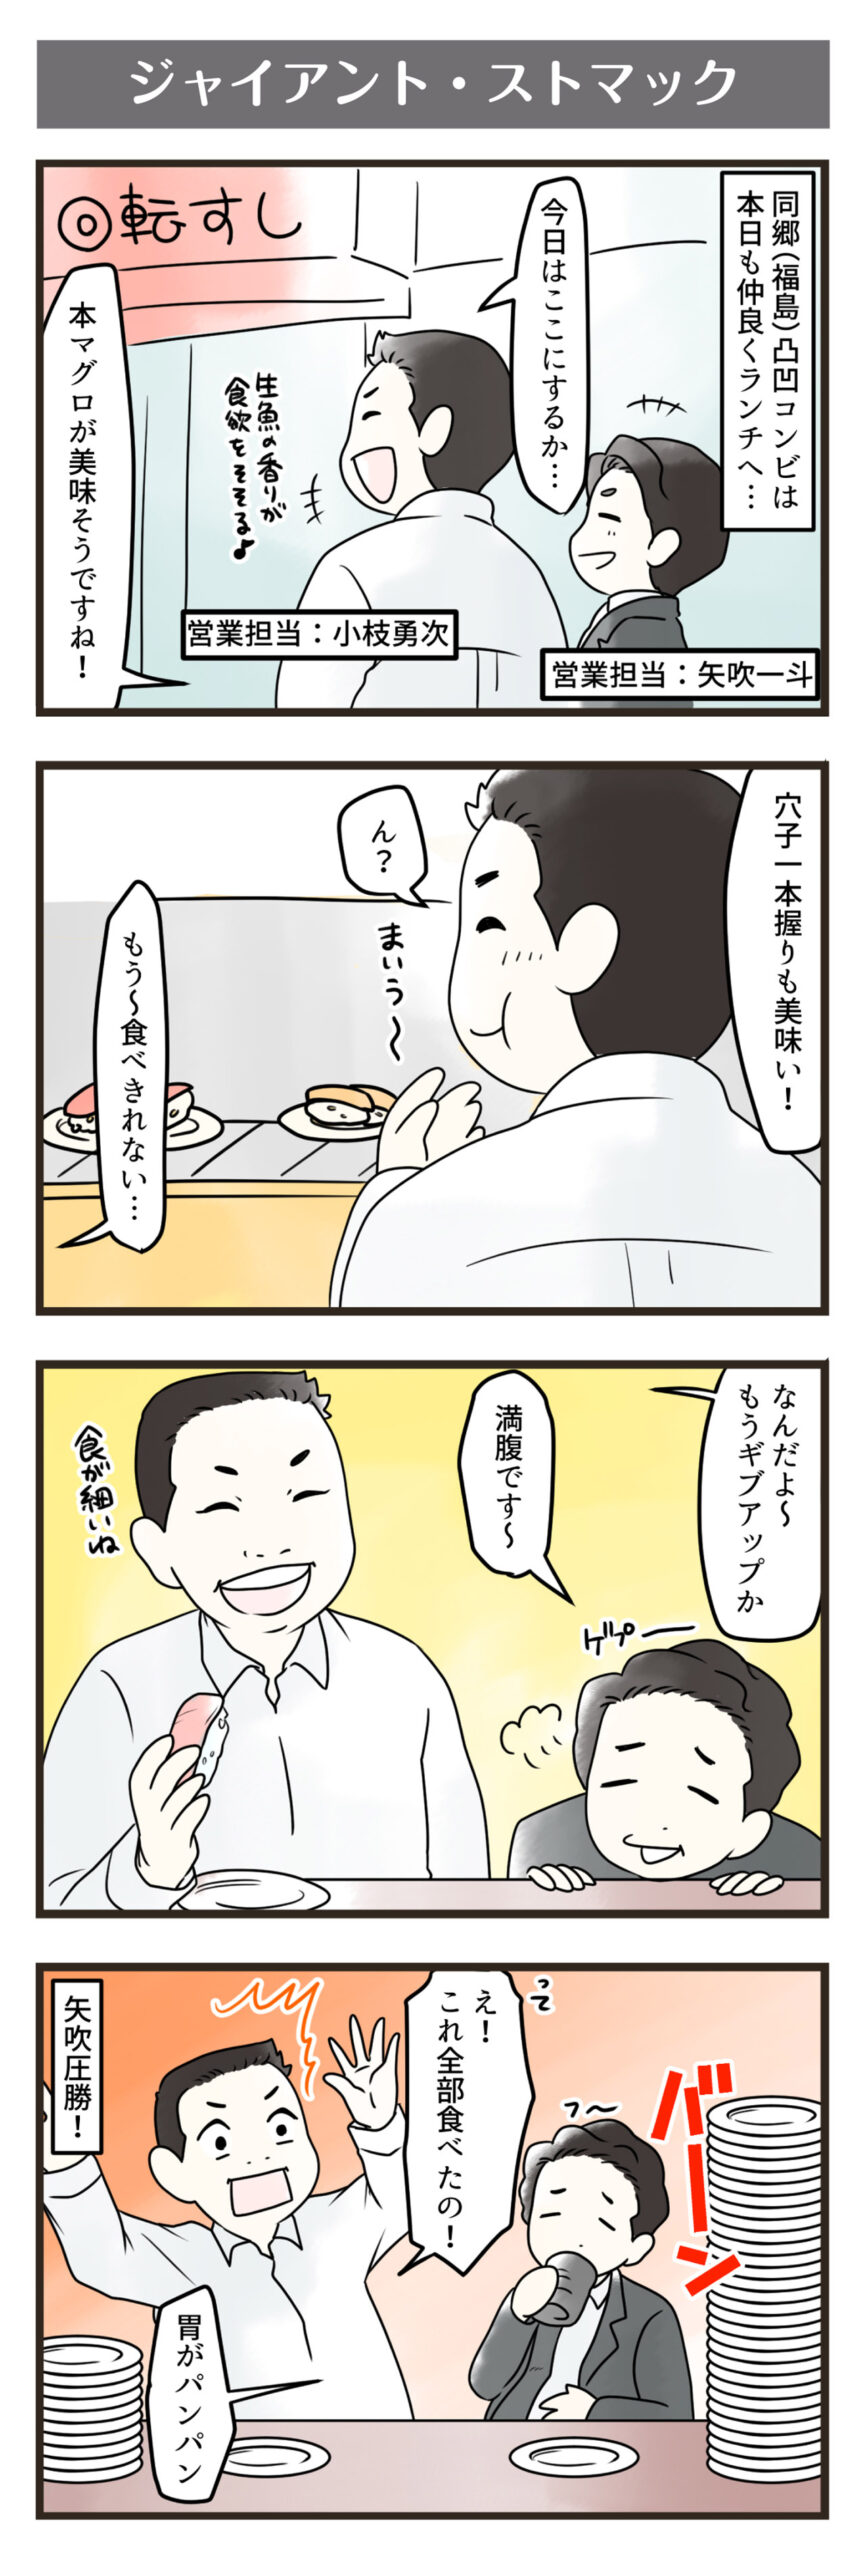 横浜スタイル4コマ漫画11月分